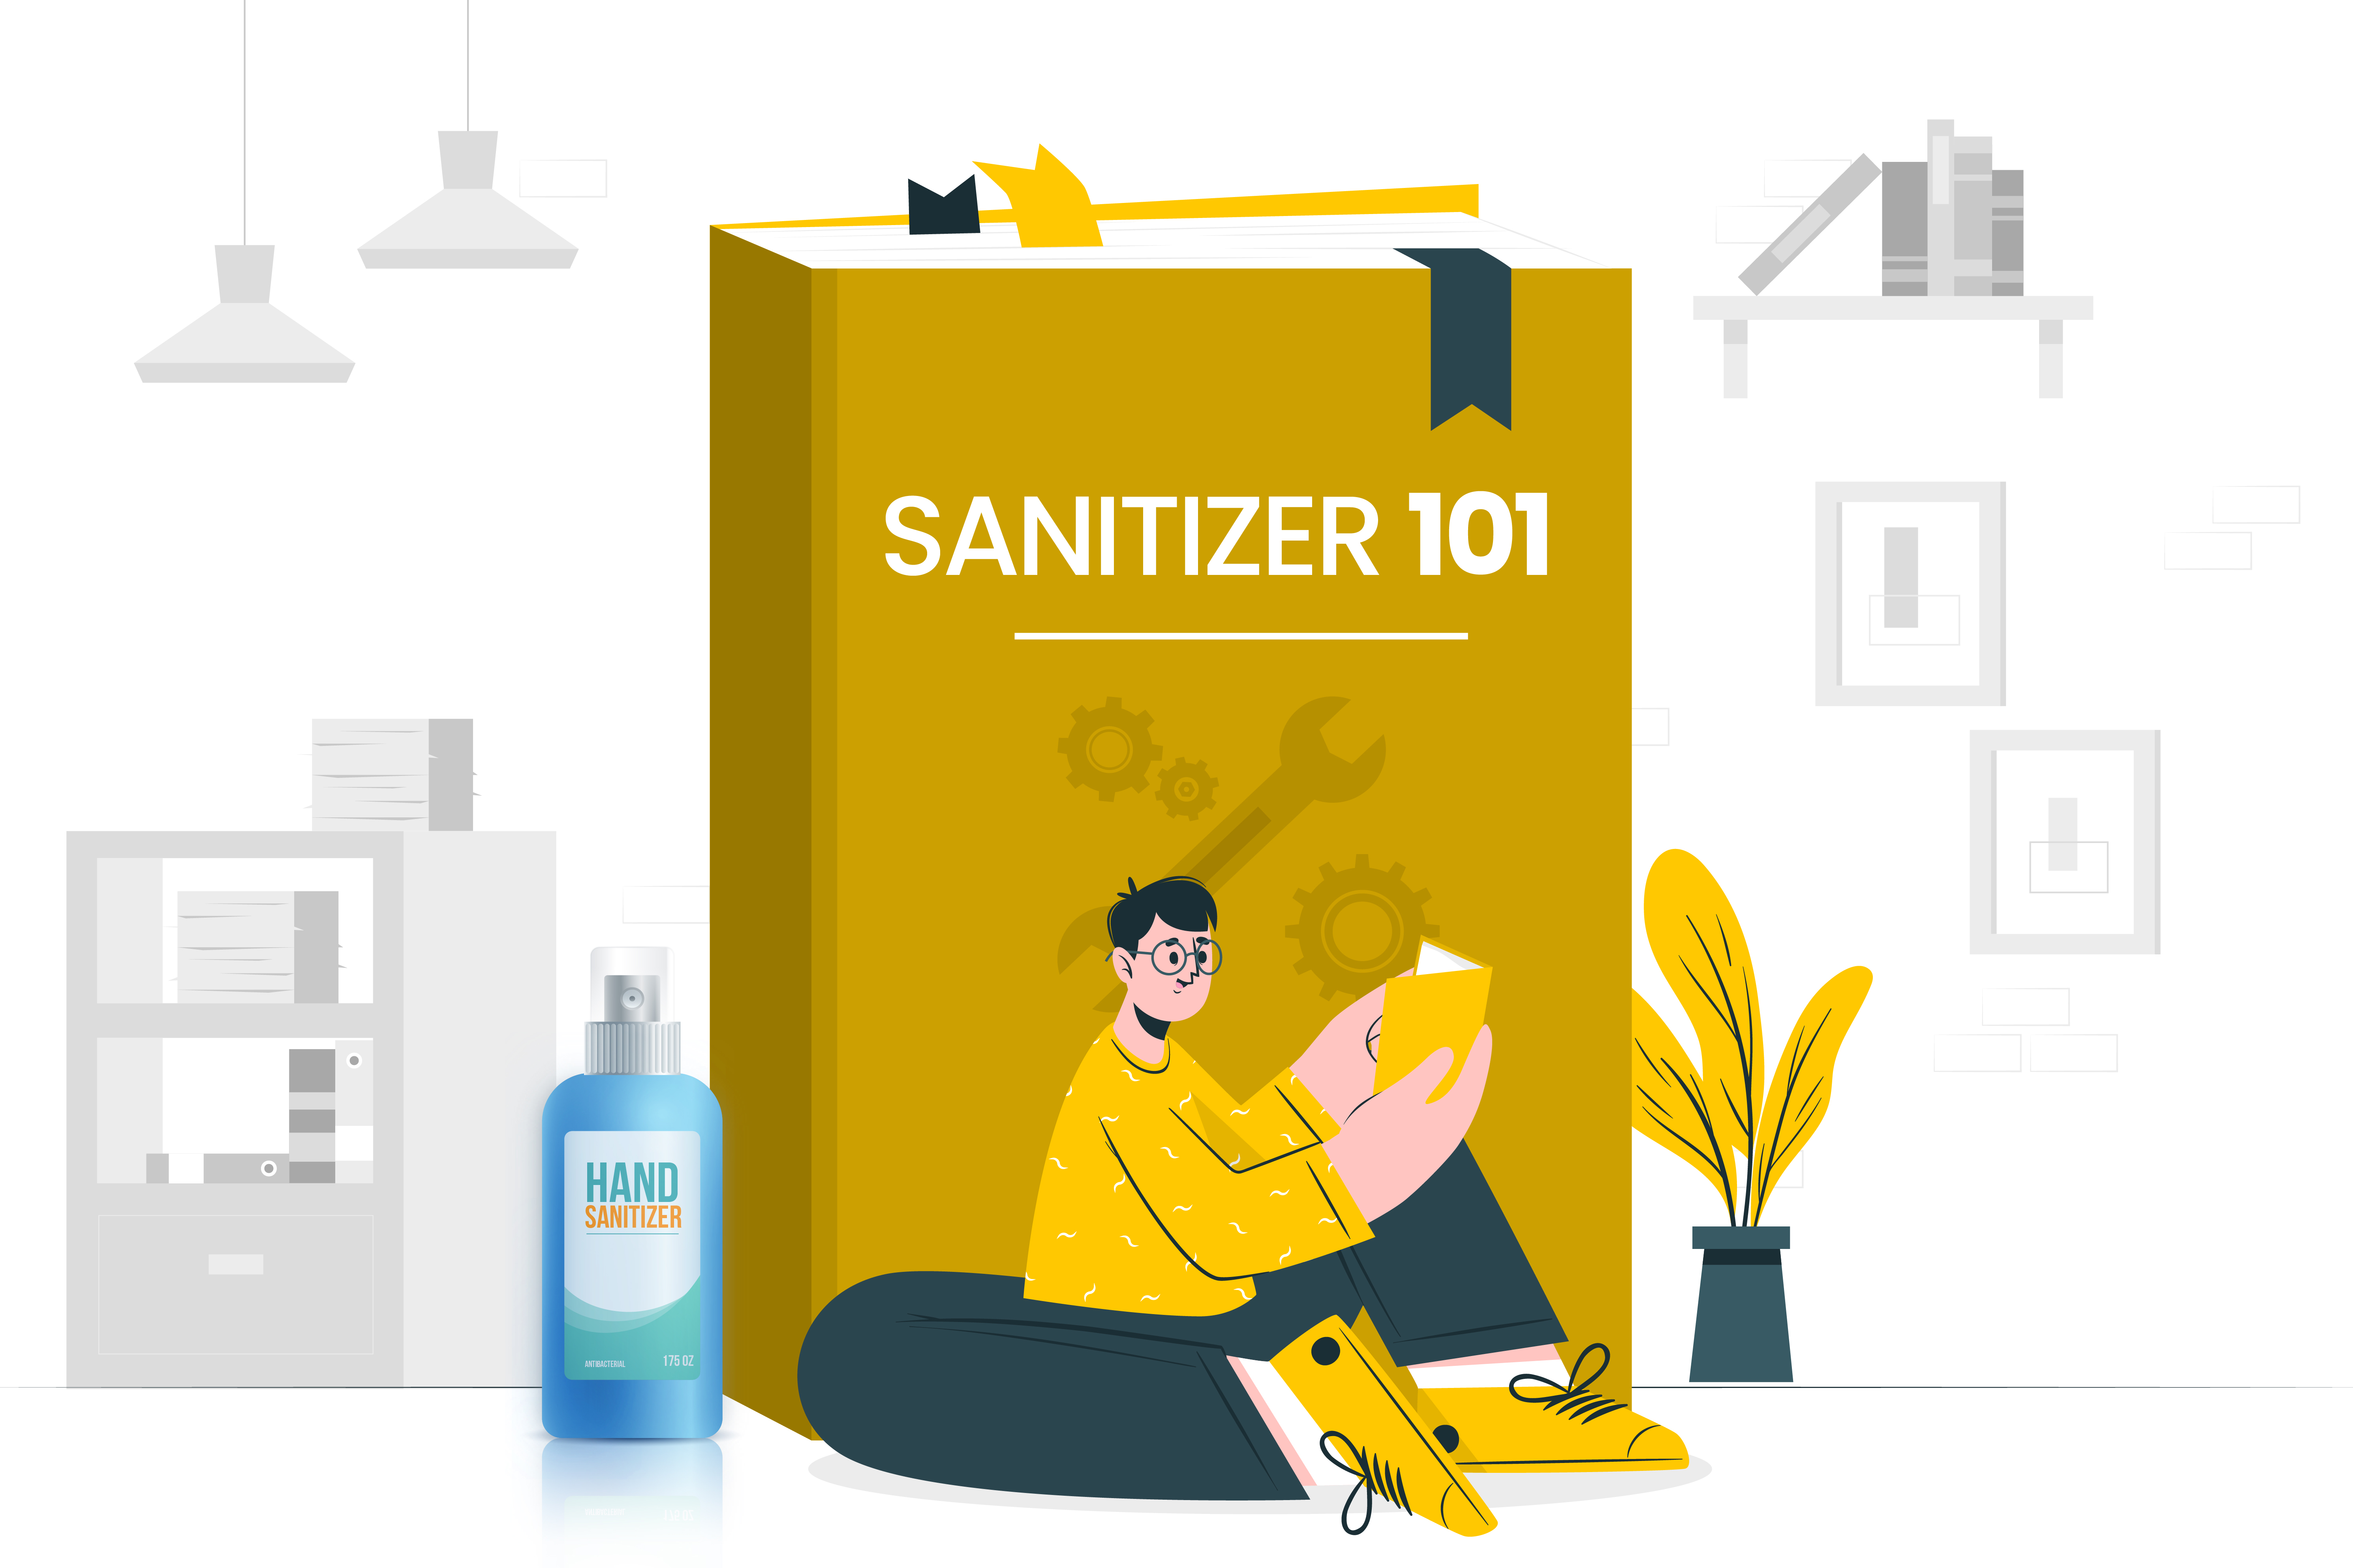 Sanitizer Usage